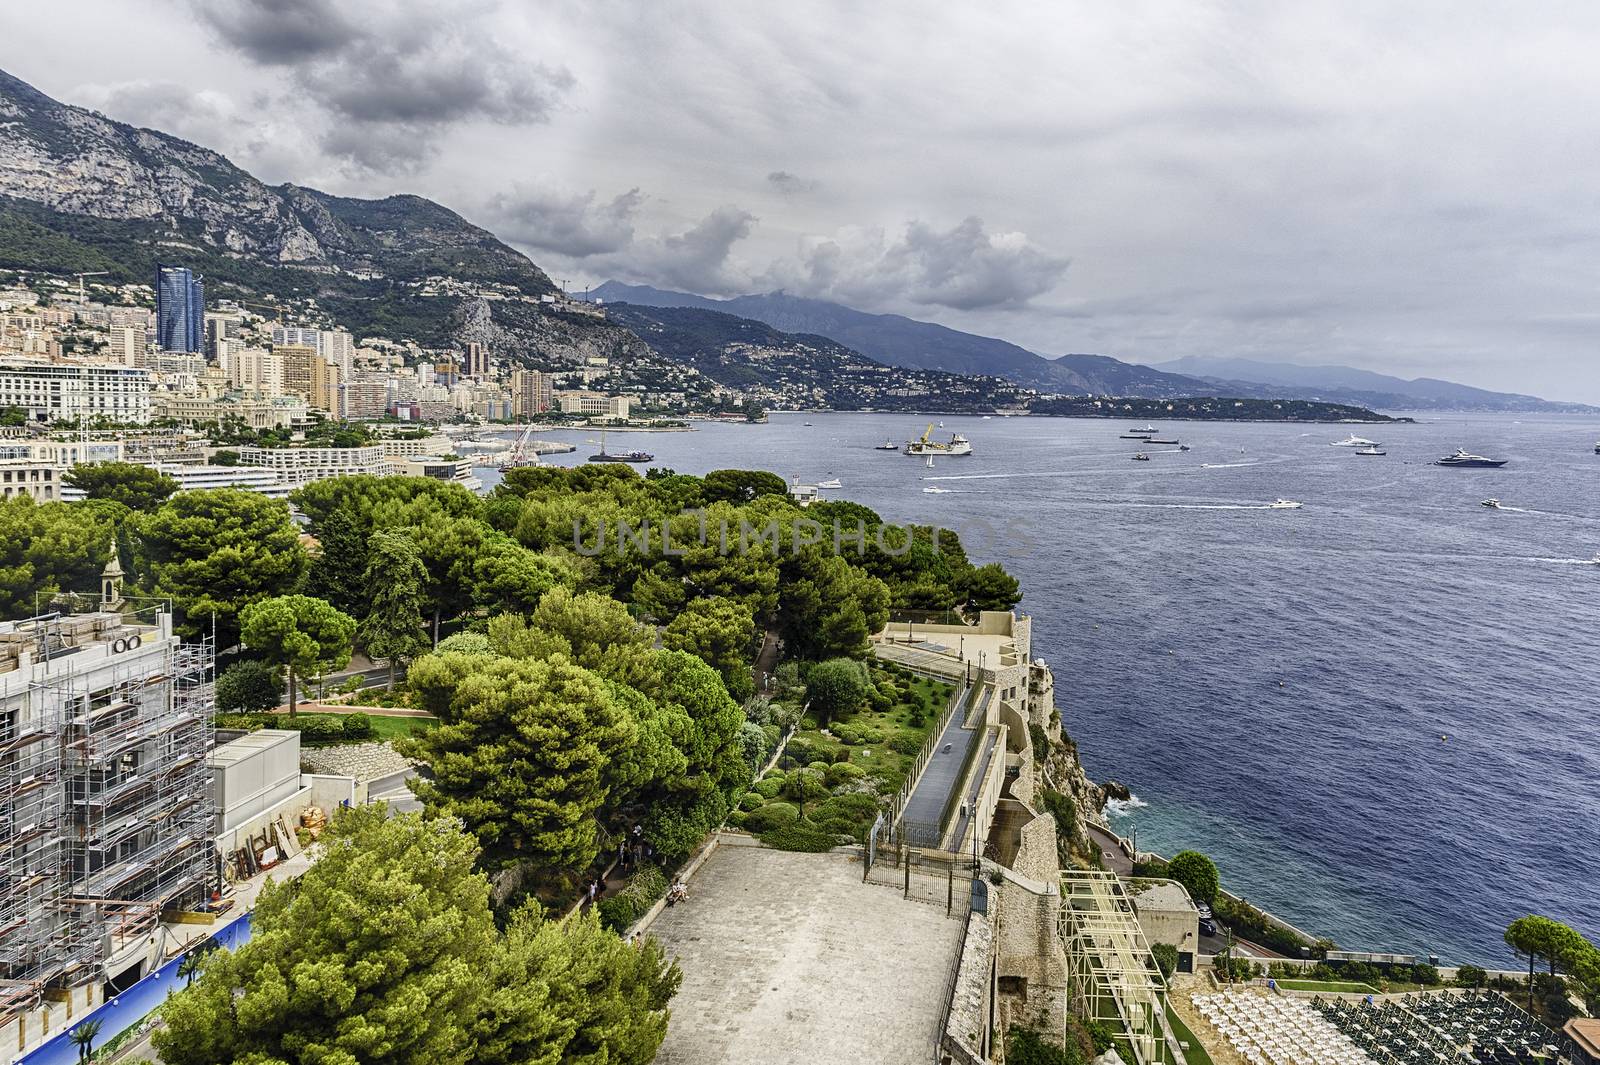 View over the coast of Monte Carlo, Principality of Monaco by marcorubino